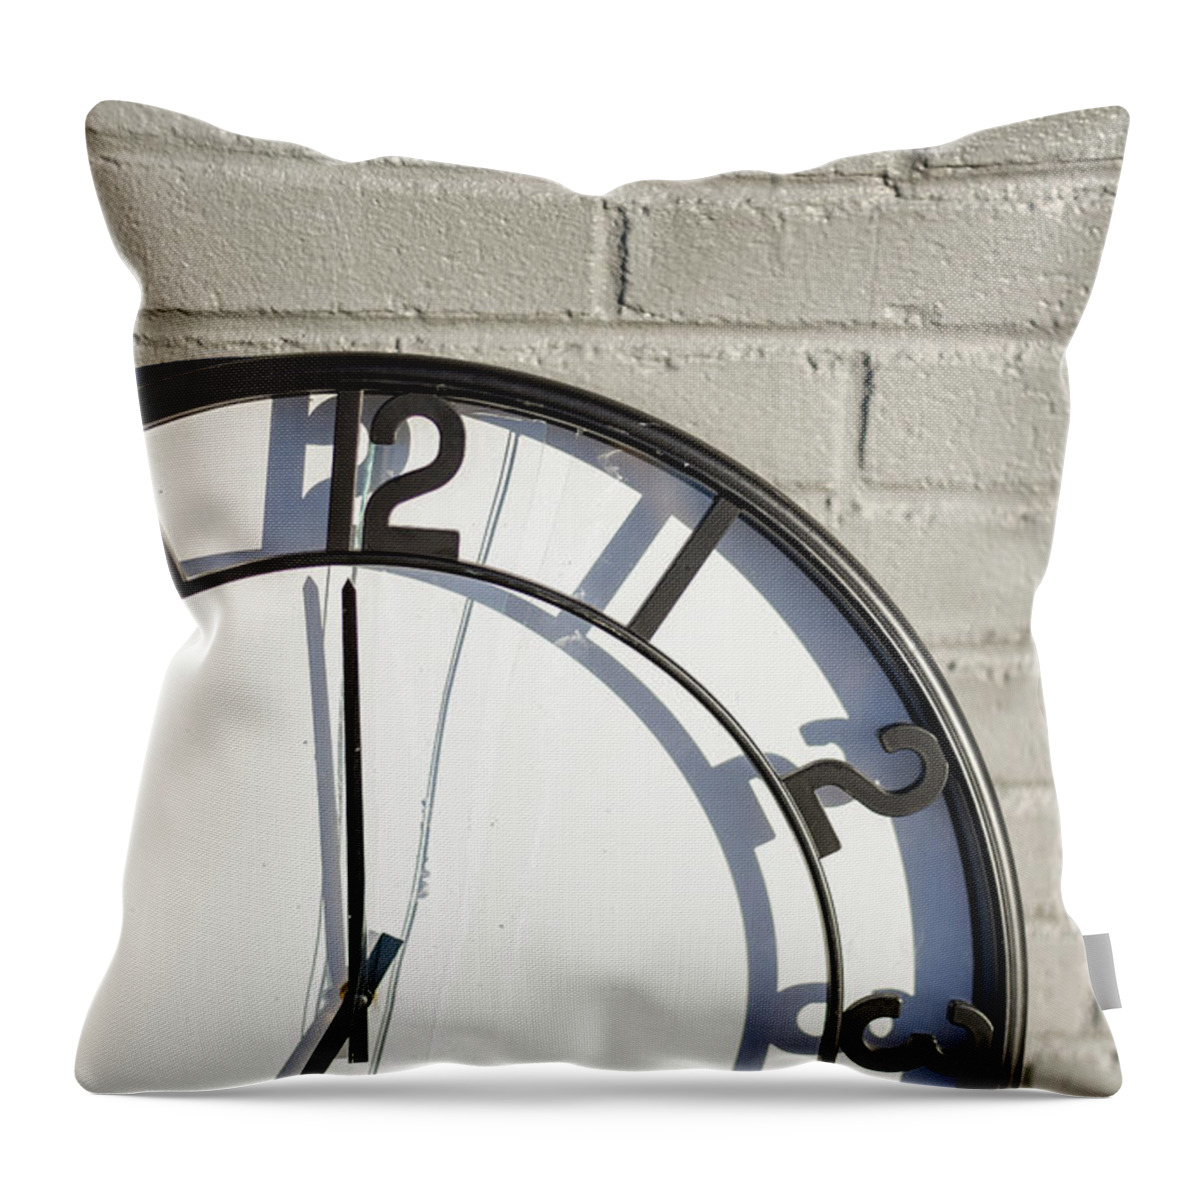 Brick Throw Pillow featuring the photograph Time Ticks Away by Doug Ash